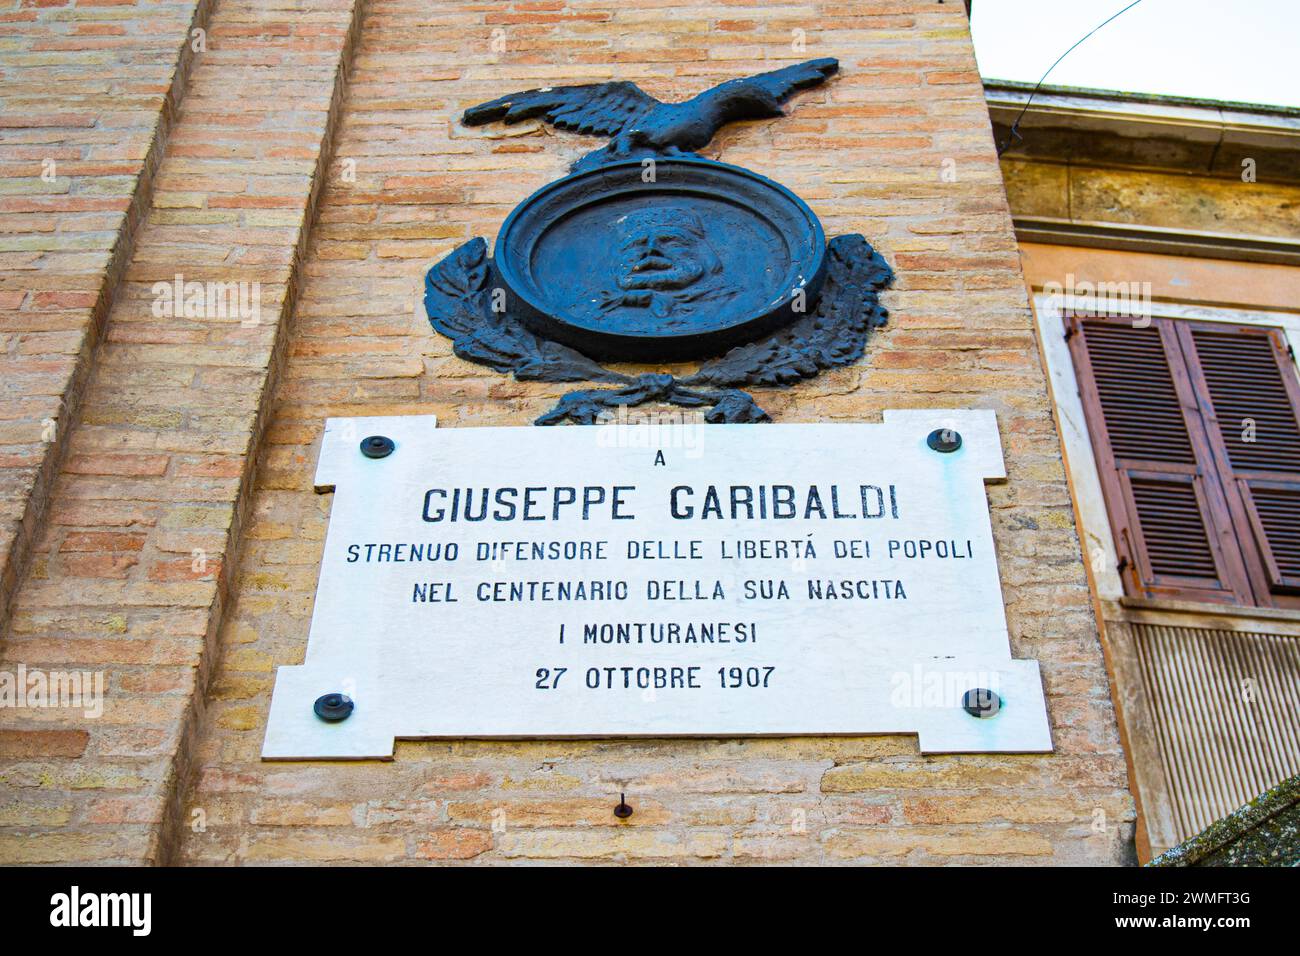 Città di Monte Urano - targa dedicata a Giuseppe Garibaldi, situata nella parte laterale della porta dell'orologio. Omaggio al risorgimento italiano. Foto Stock